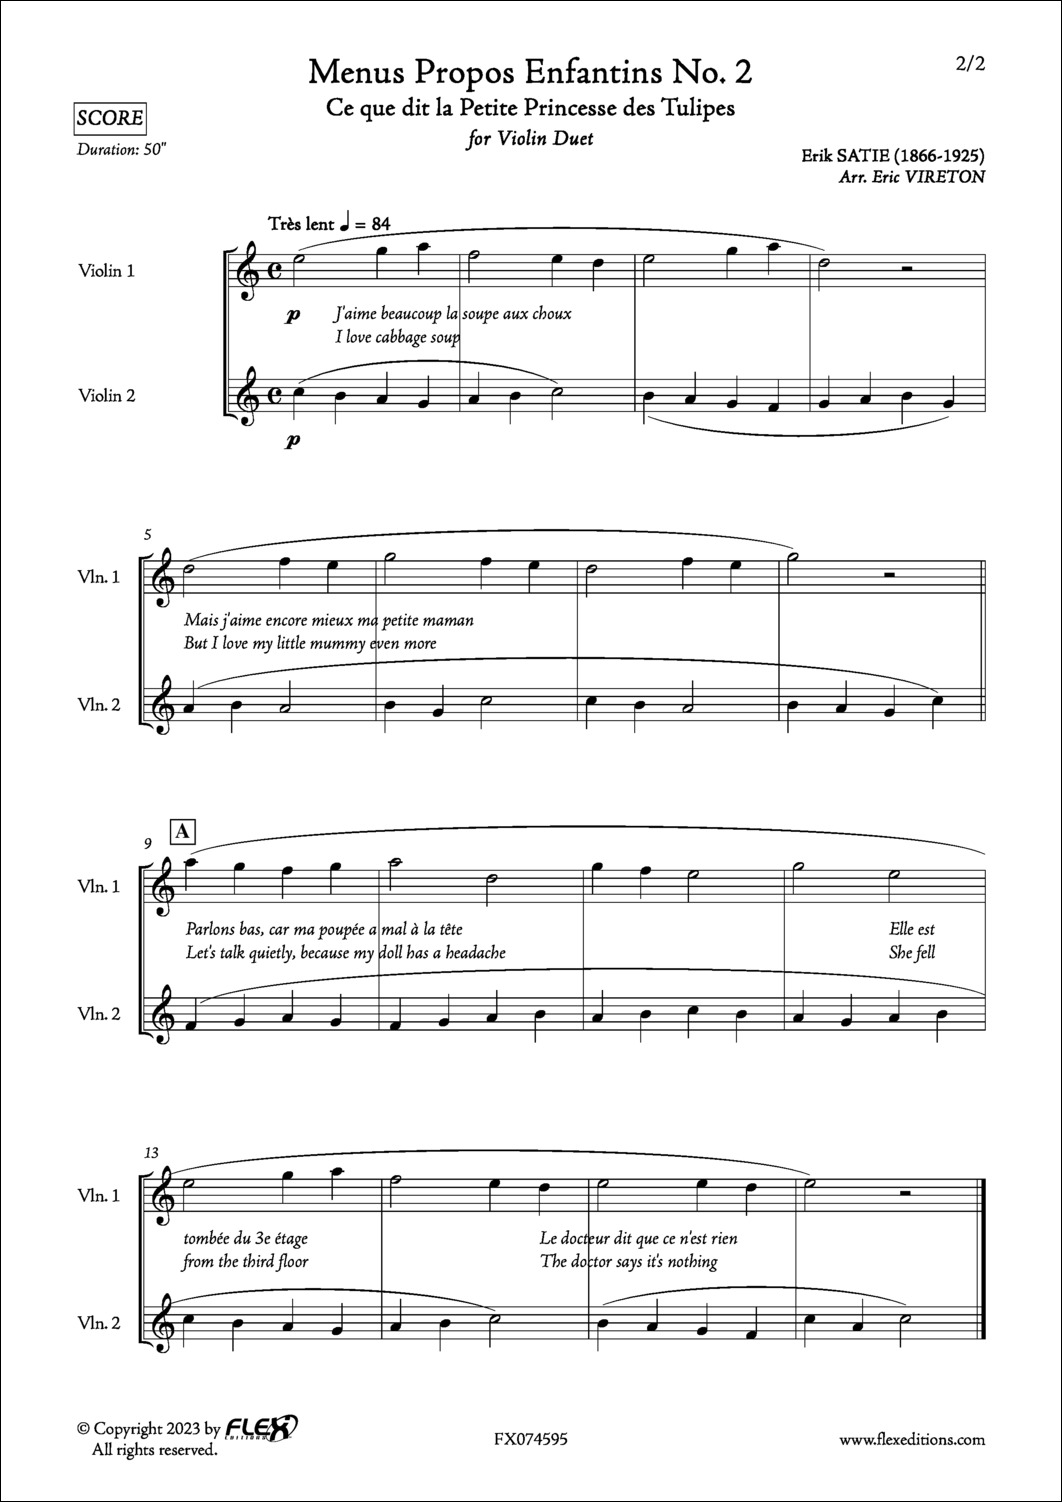 Menus Propos Enfantins No. 2 - E. SATIE - <font color=#666666>Violin Duet</font>